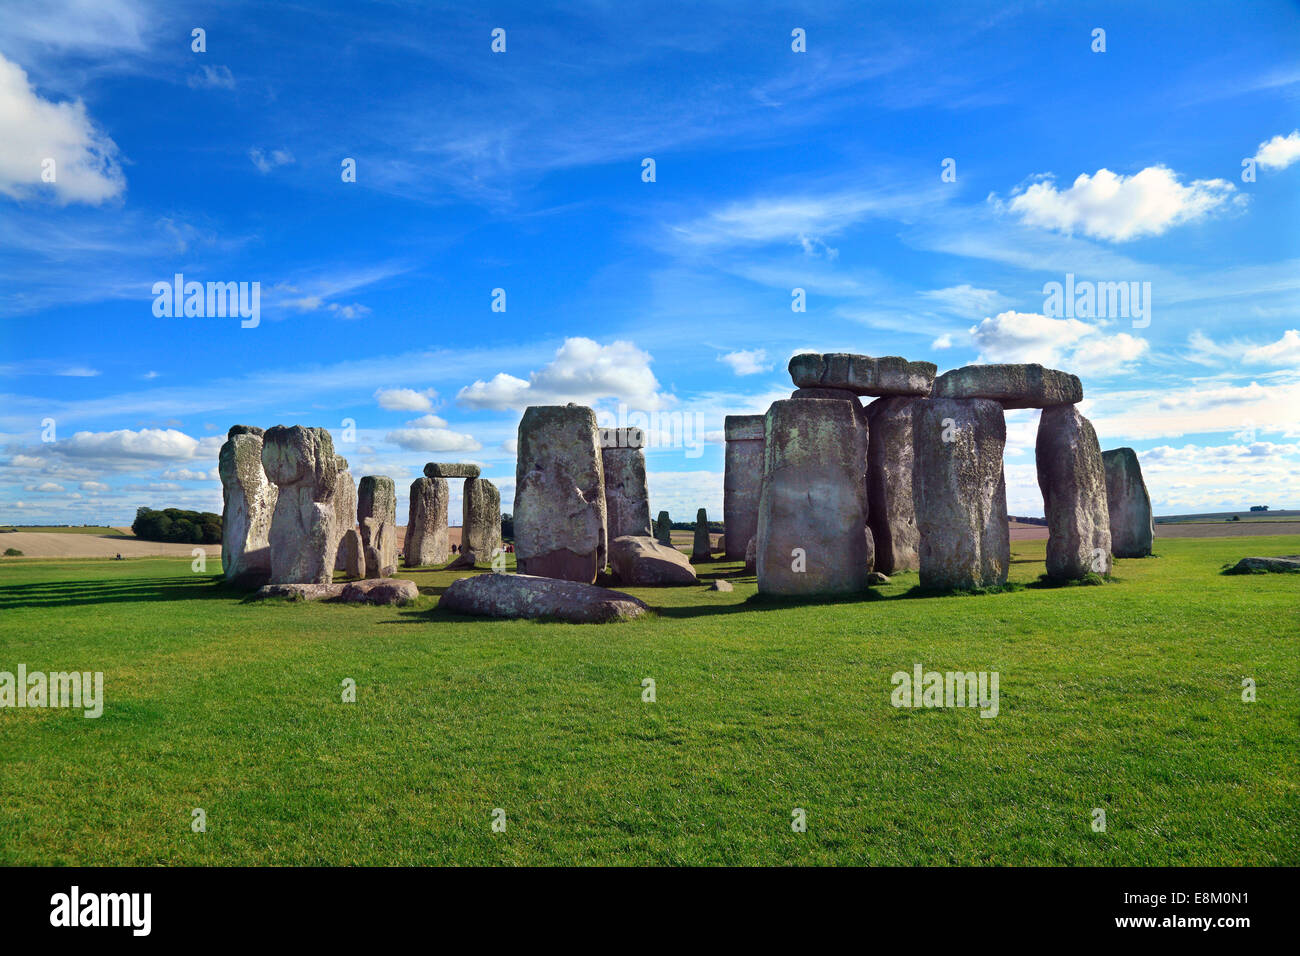 Monument préhistorique de Stonehenge Wiltshire en Angleterre. Banque D'Images